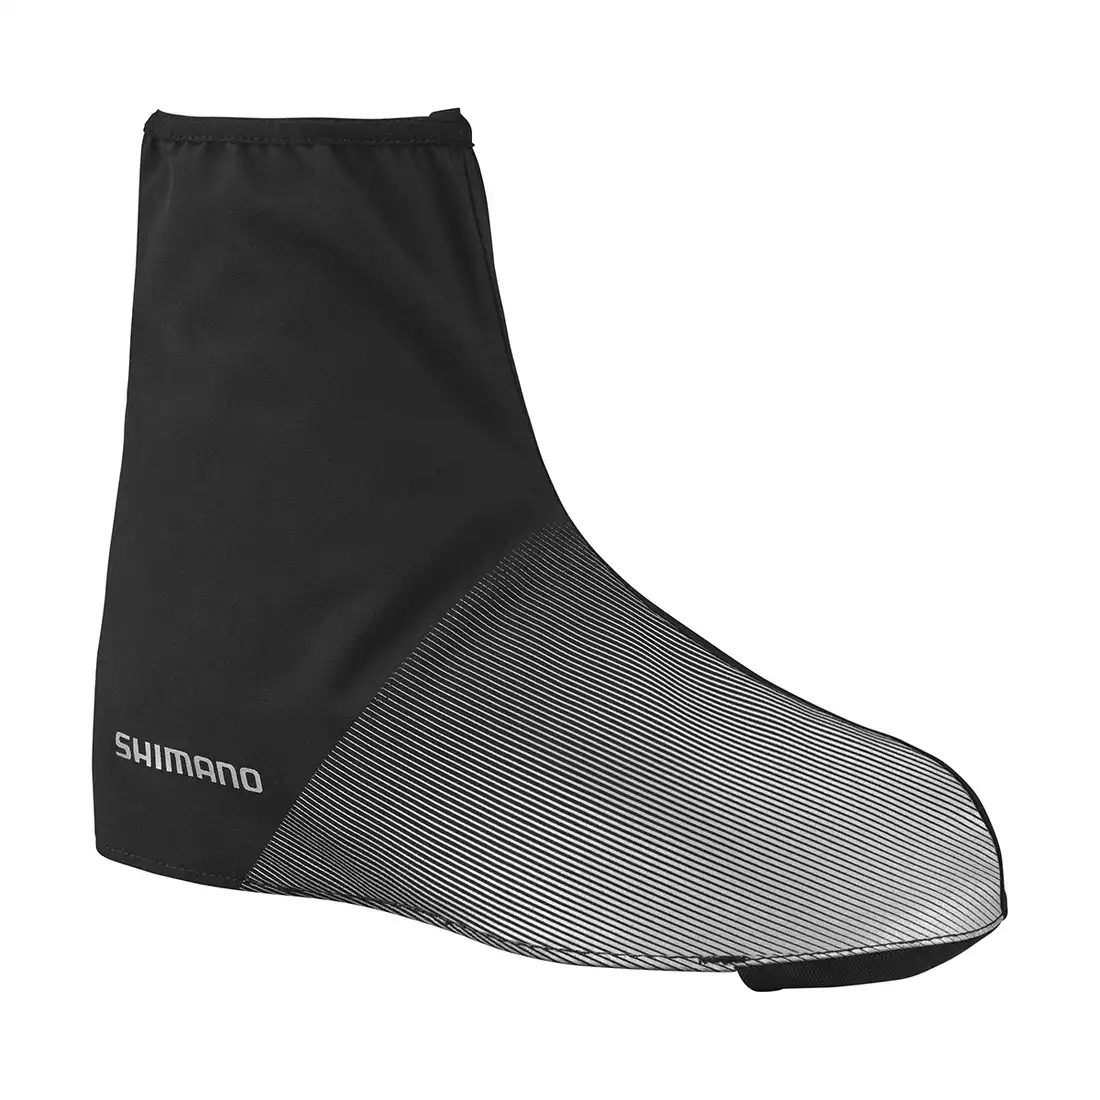 SHIMANO Ochraniacze na buty do pedałów platformowych Waterproof Overshoe ECWFABWTS72UL0108 Black 2XL (47-49)